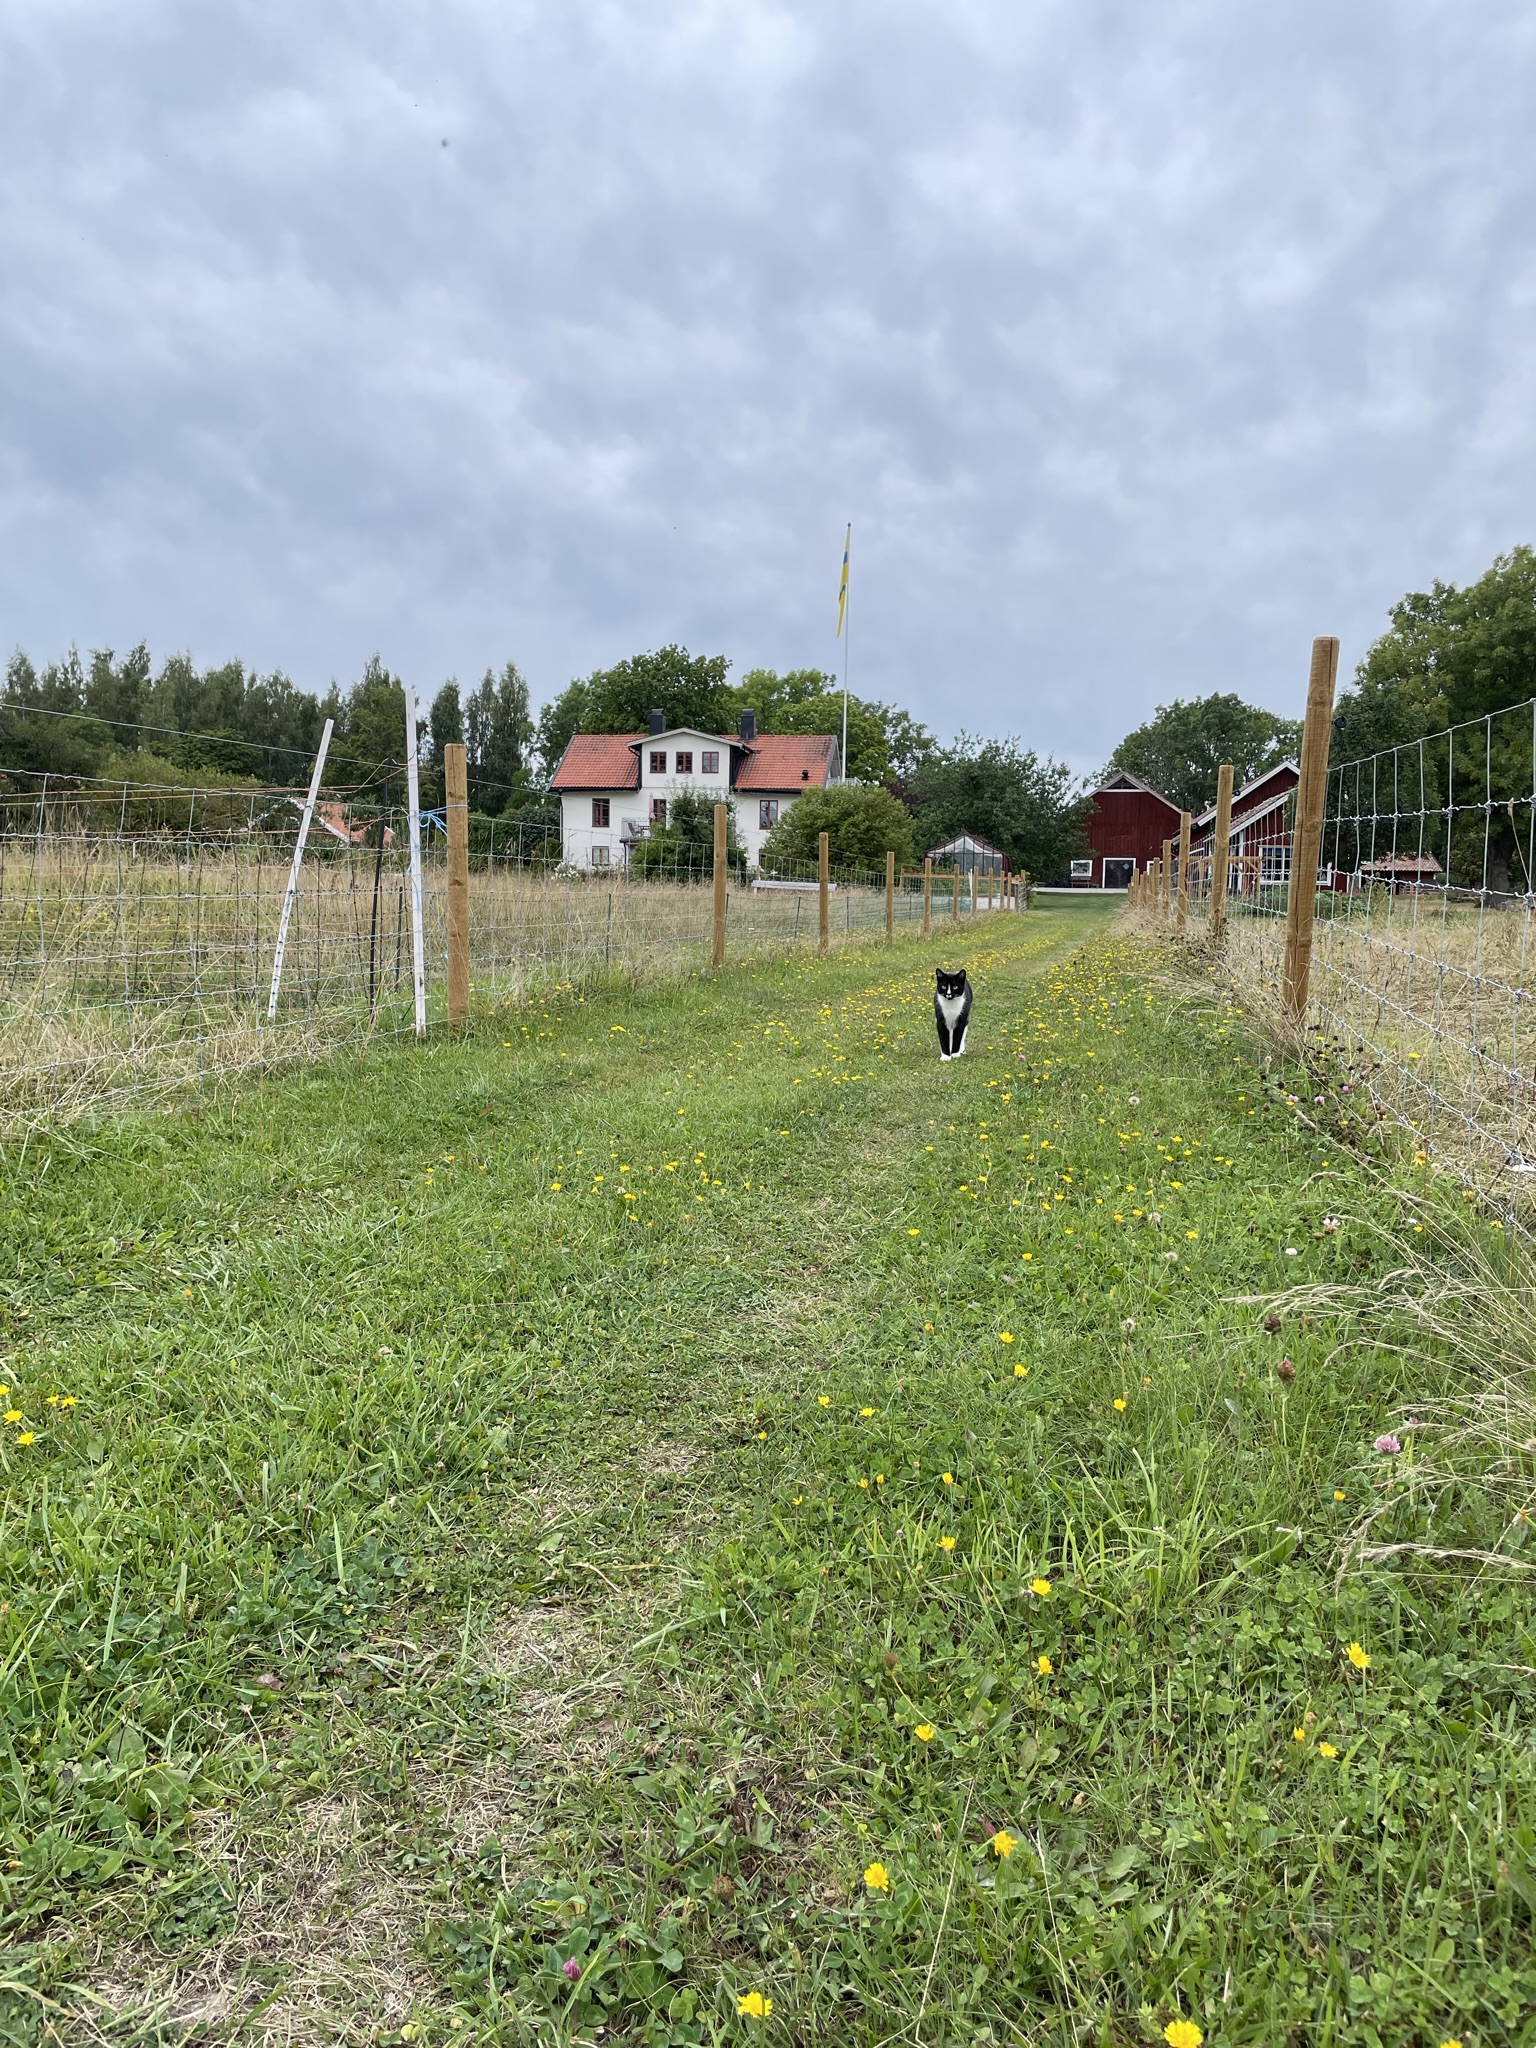 En katt står emellan två hagar på en grön stig. I bakgrunden skymtas ett vitt hus.